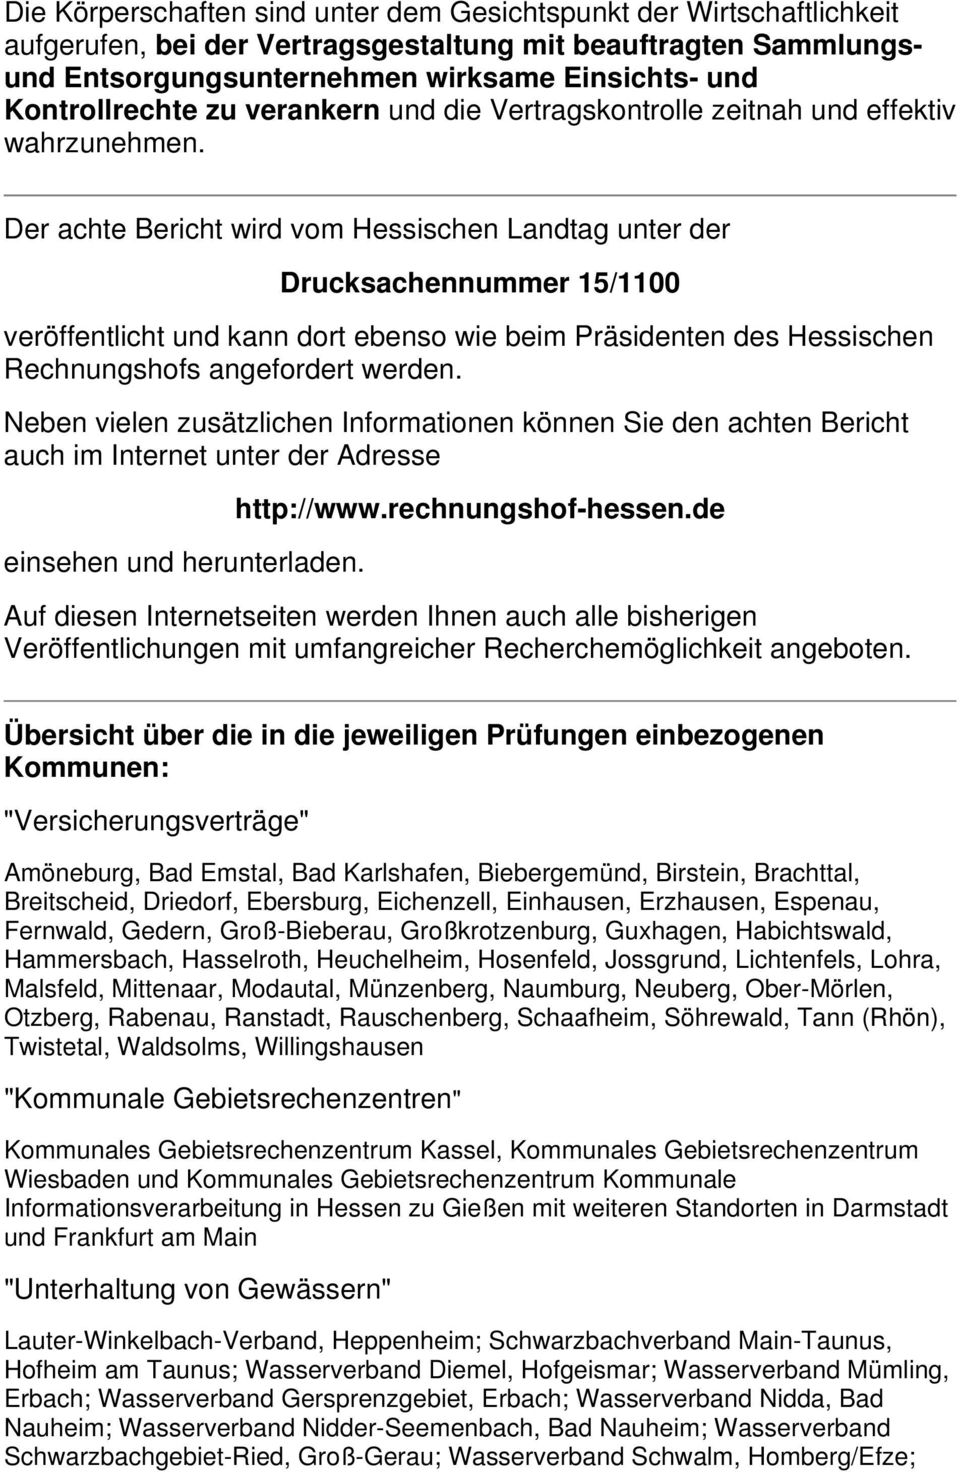 Der achte Bericht wird vom Hessischen Landtag unter der Drucksachennummer 15/1100 veröffentlicht und kann dort ebenso wie beim Präsidenten des Hessischen Rechnungshofs angefordert werden.